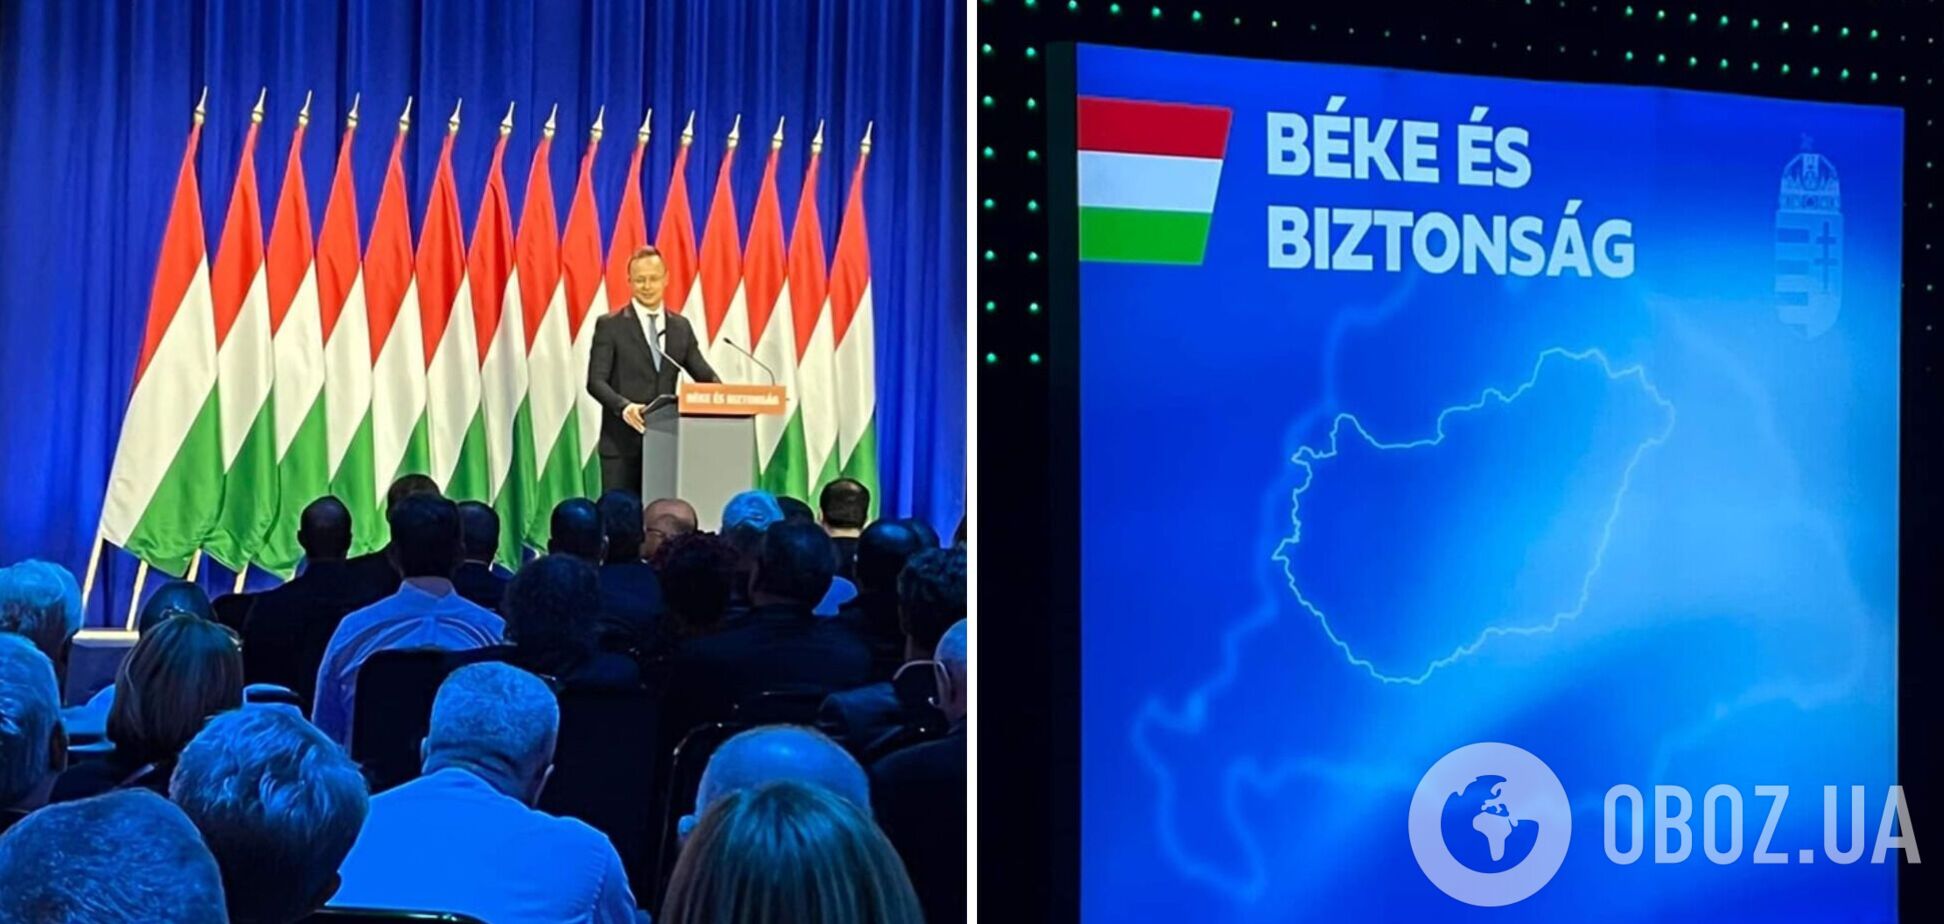 Сийярто выступил на фоне карты 'Великой Венгрии' во время мероприятия партии Орбана 'Фидес'. Фото